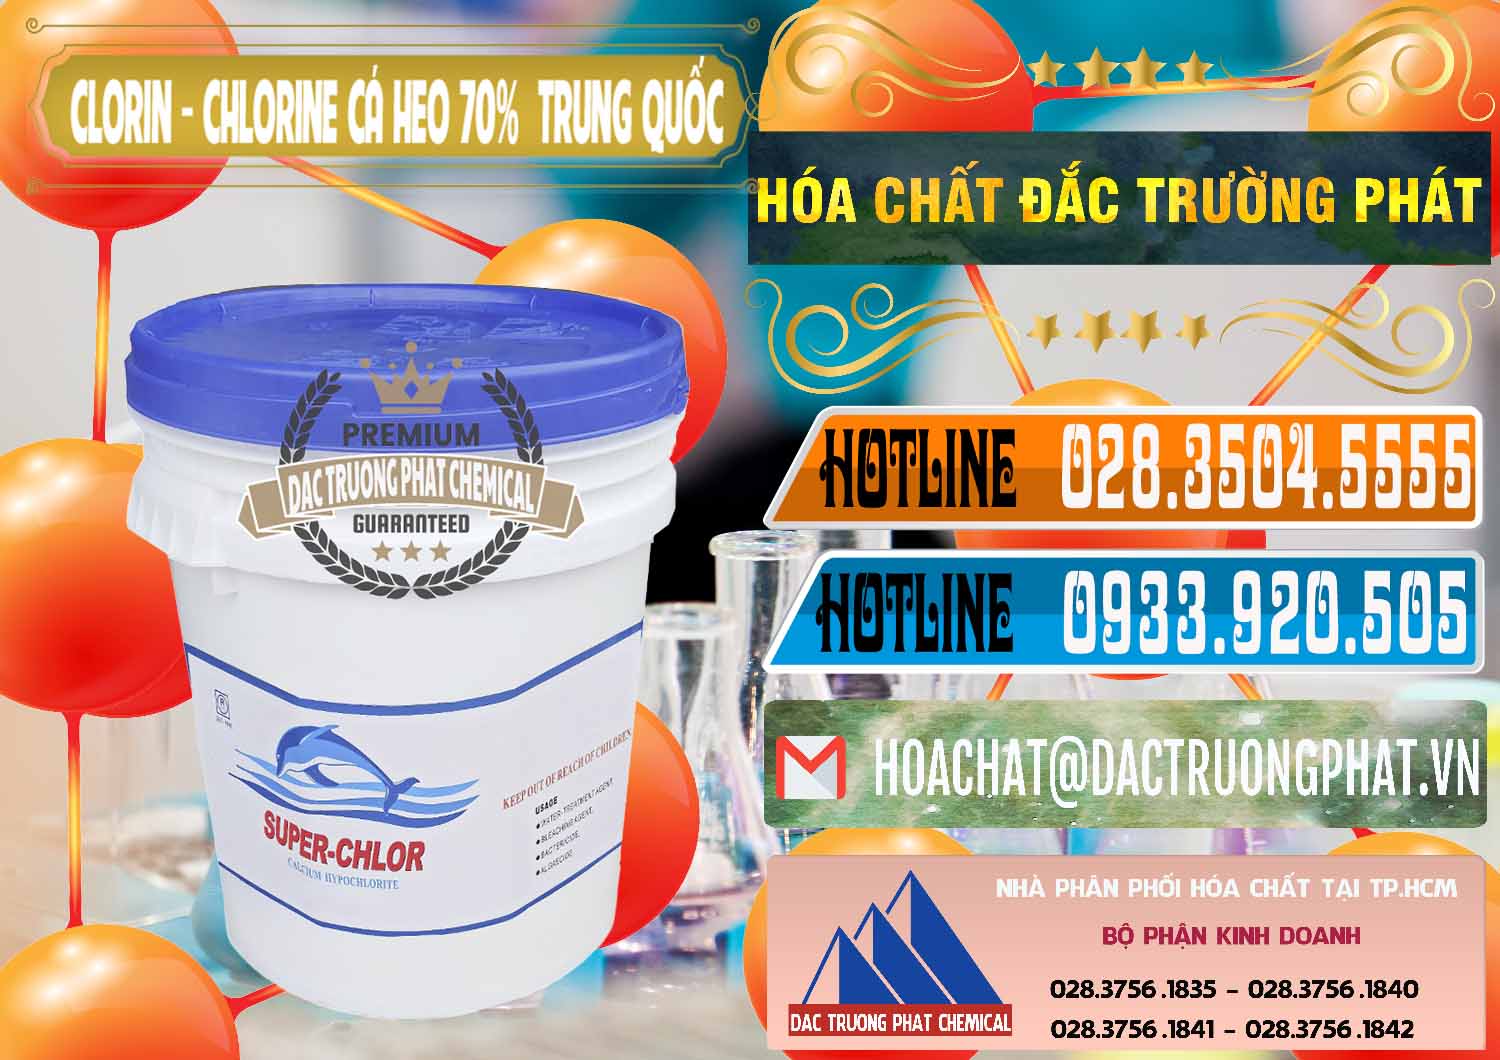 Đơn vị chuyên cung cấp - bán Clorin - Chlorine Cá Heo 70% Super Chlor Nắp Xanh Trung Quốc China - 0209 - Nơi cung cấp - phân phối hóa chất tại TP.HCM - stmp.net